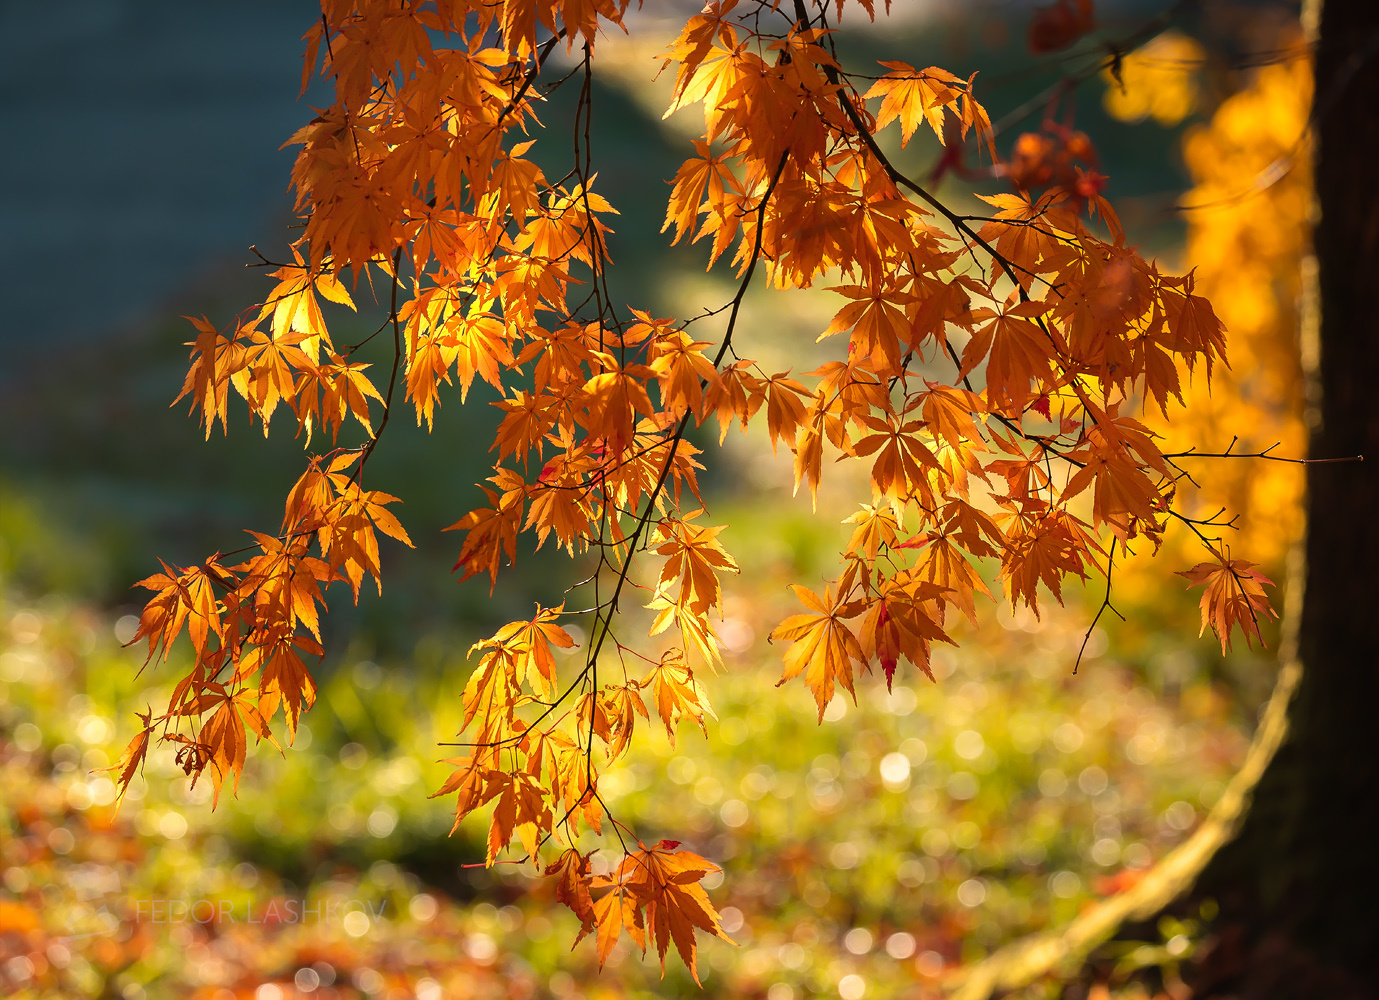 Клён Сочинский национальный парк Дендрарий осень листья осенний лист Сочи клён жёлтый оранжевый солнечное